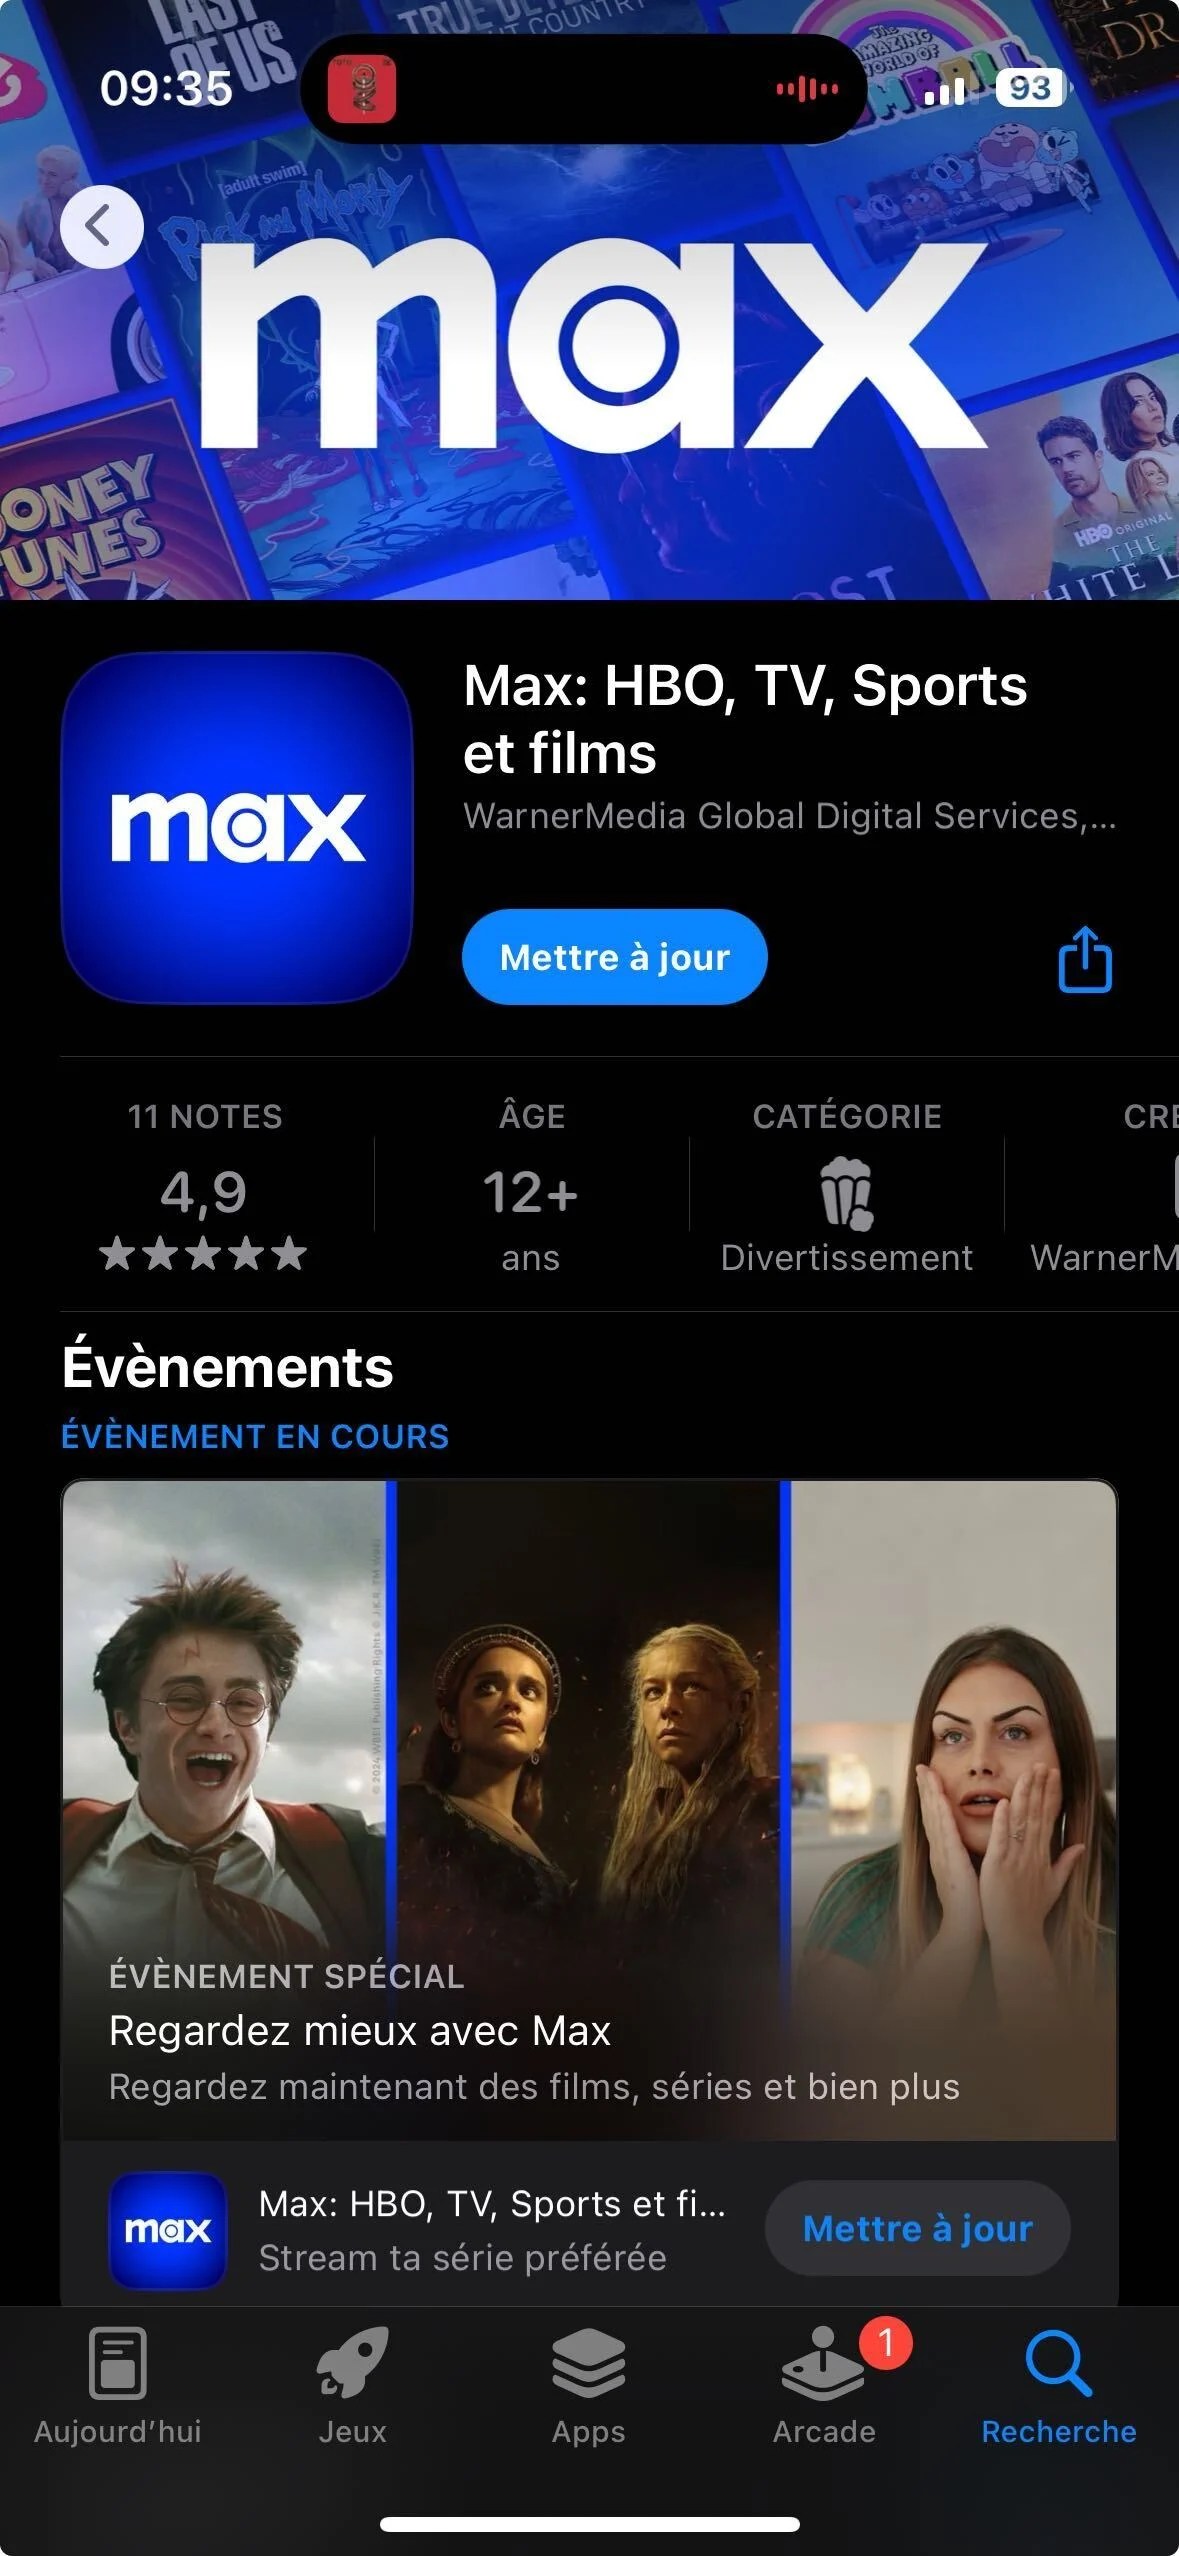 (HBO) Max sur l'App Store français // Source : Frandroid